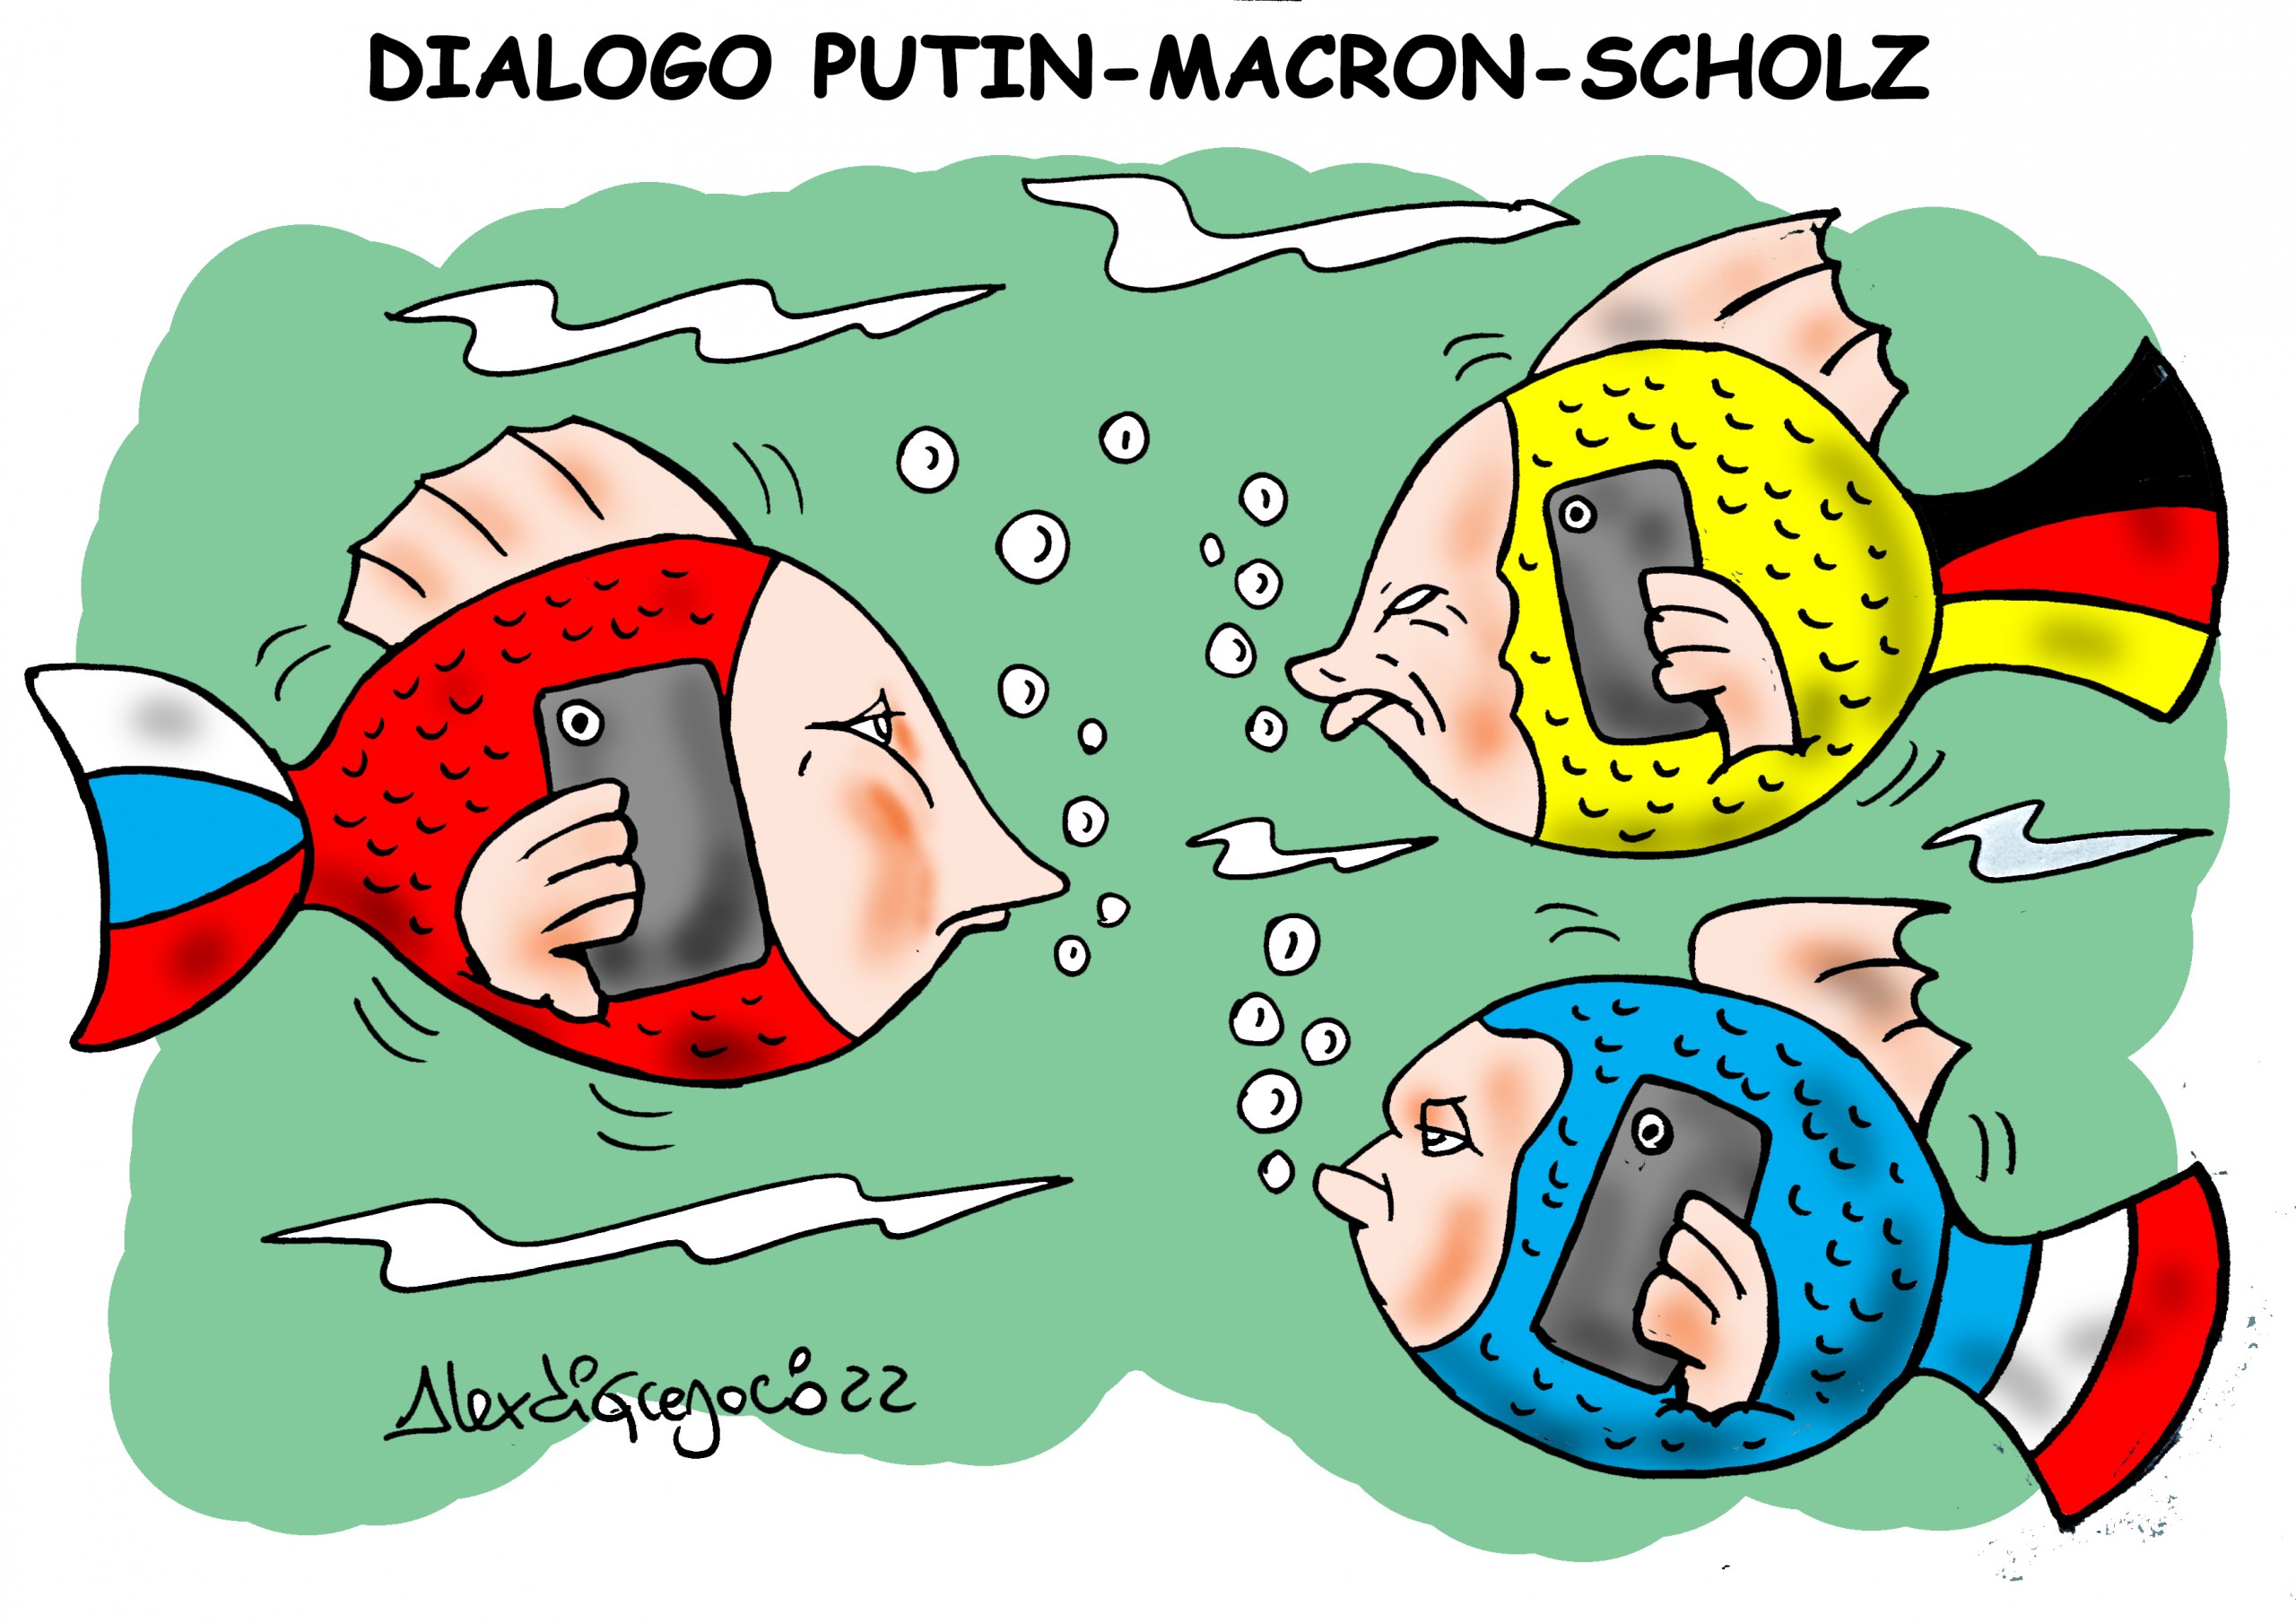 Dialogo Putin-Macron-Scholz